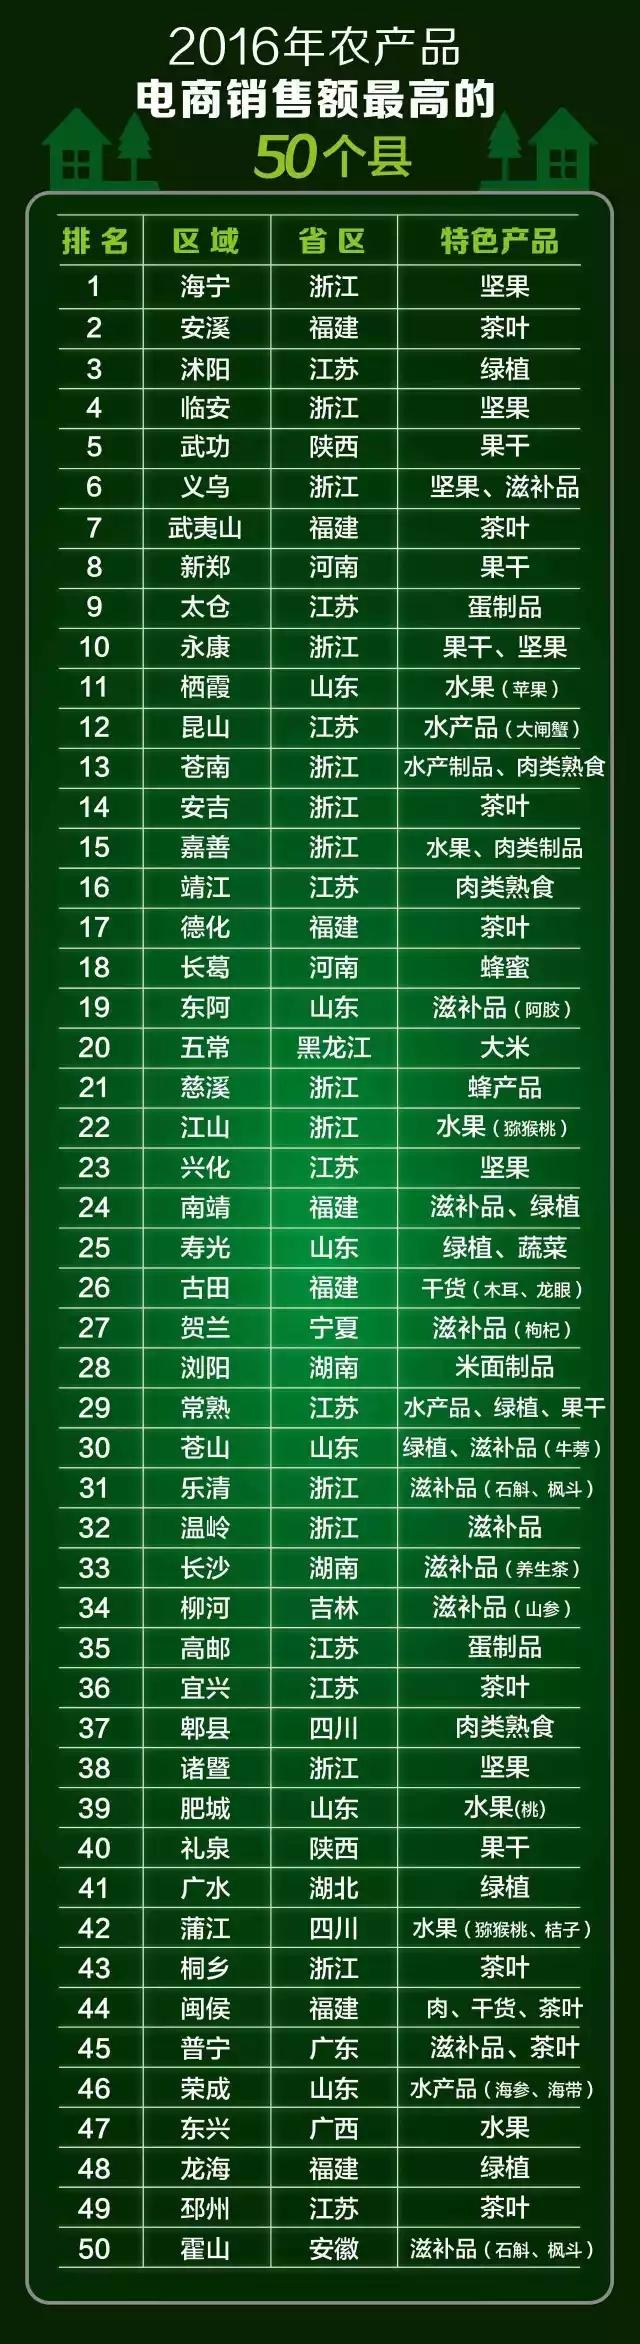 东兴电子商务再次上榜全国50强，广西东兴水果排名第47位